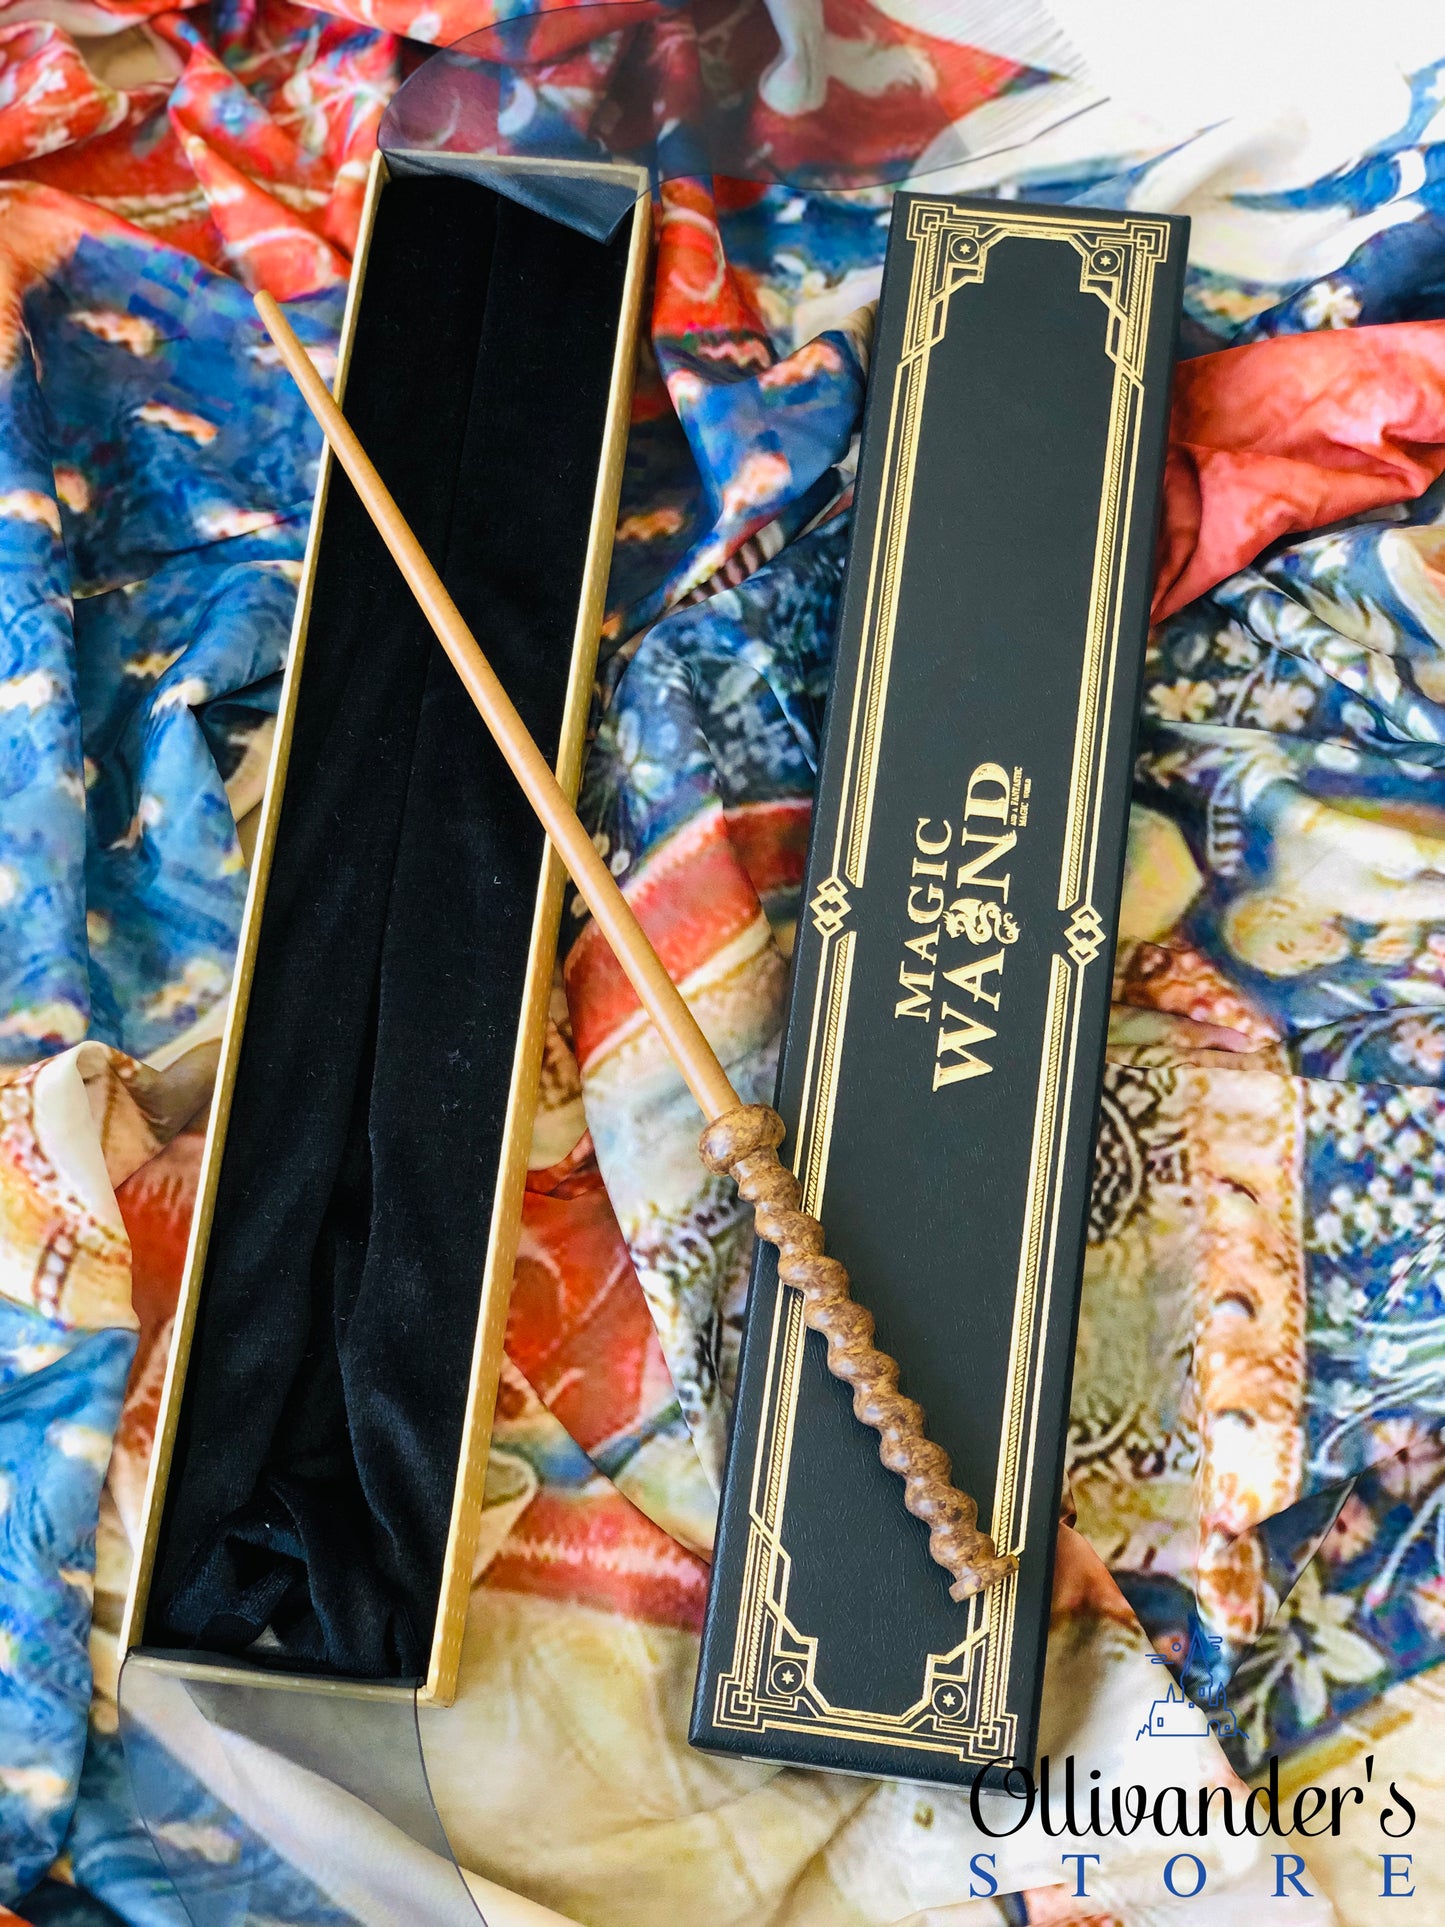 Arthur Weasley's Magic wand